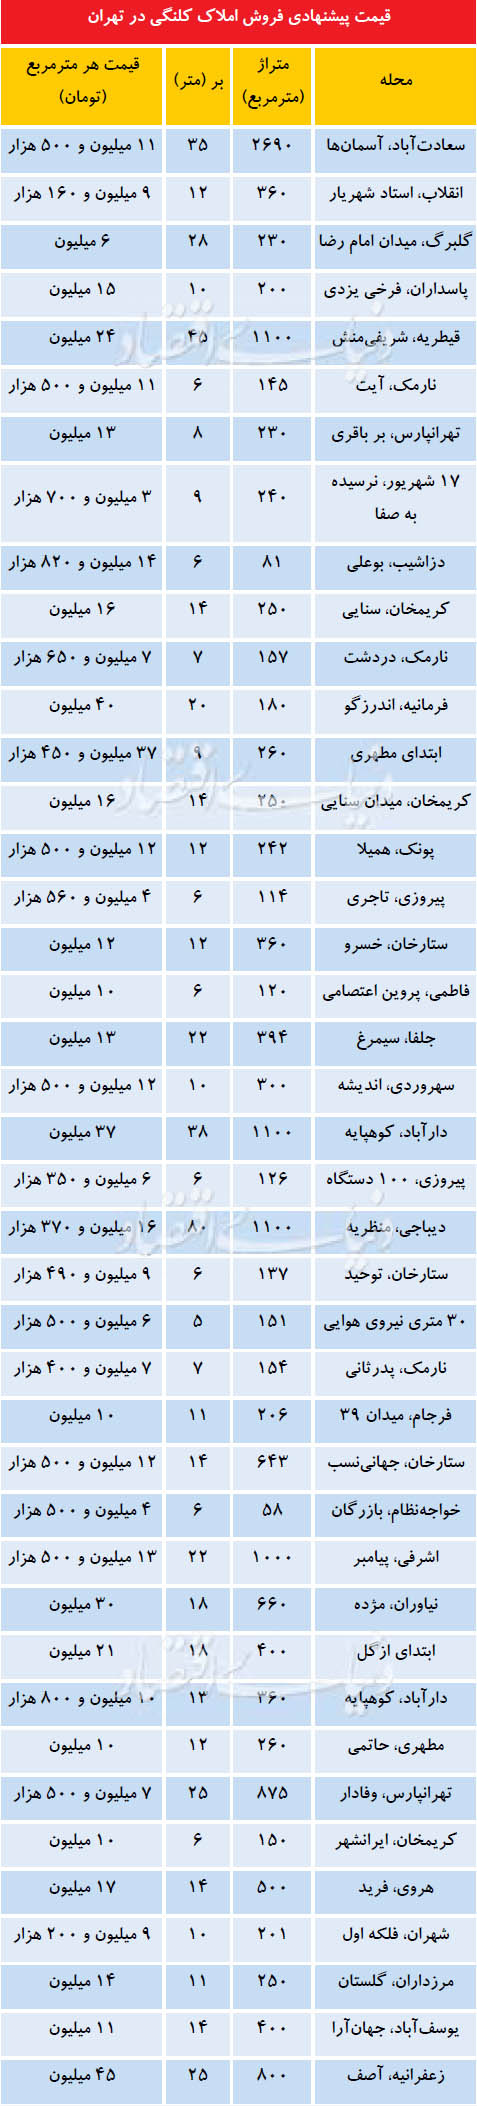 نرخ خانه کلنگی در مناطق مختلف تهران+ جدول